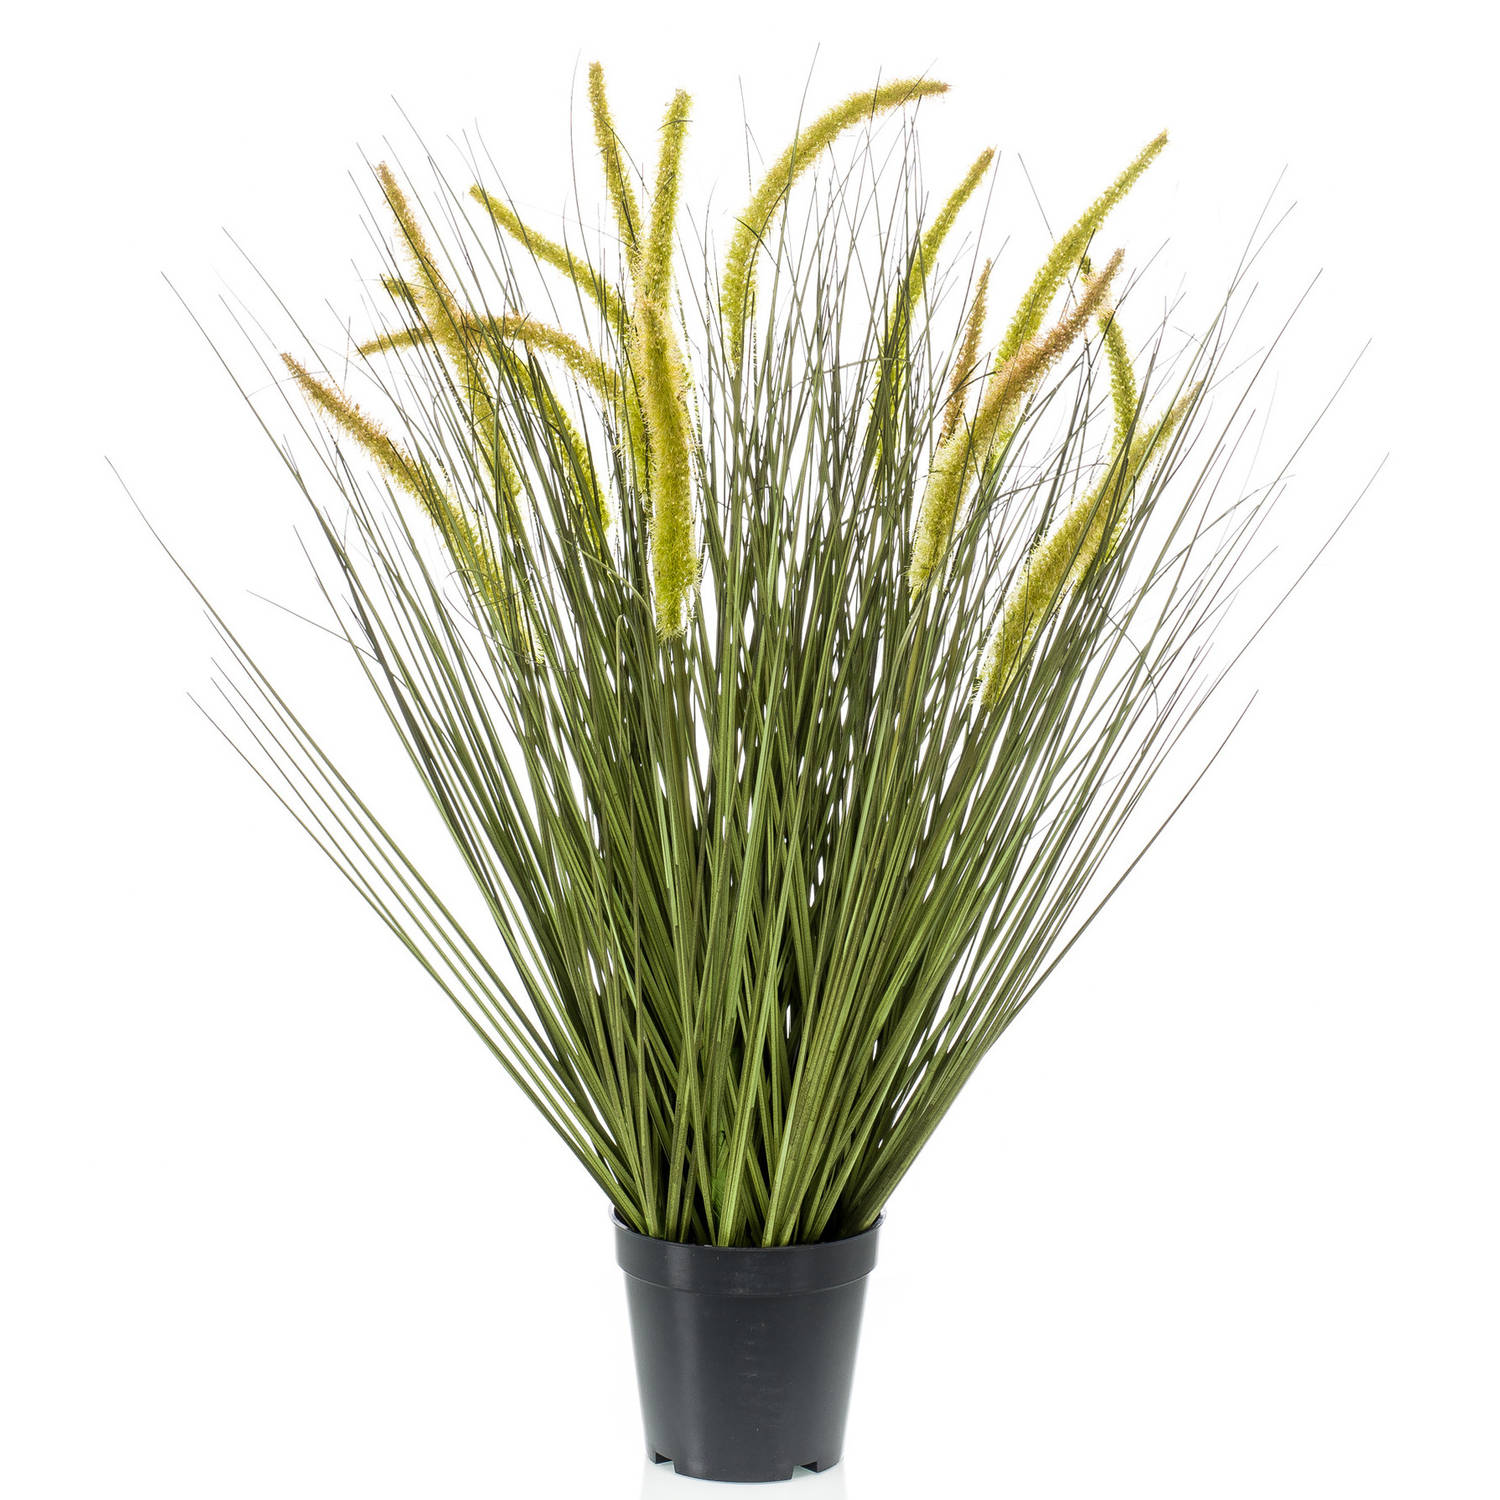 Kunstplant groen gras sprieten 70 cm. - Kunstplanten